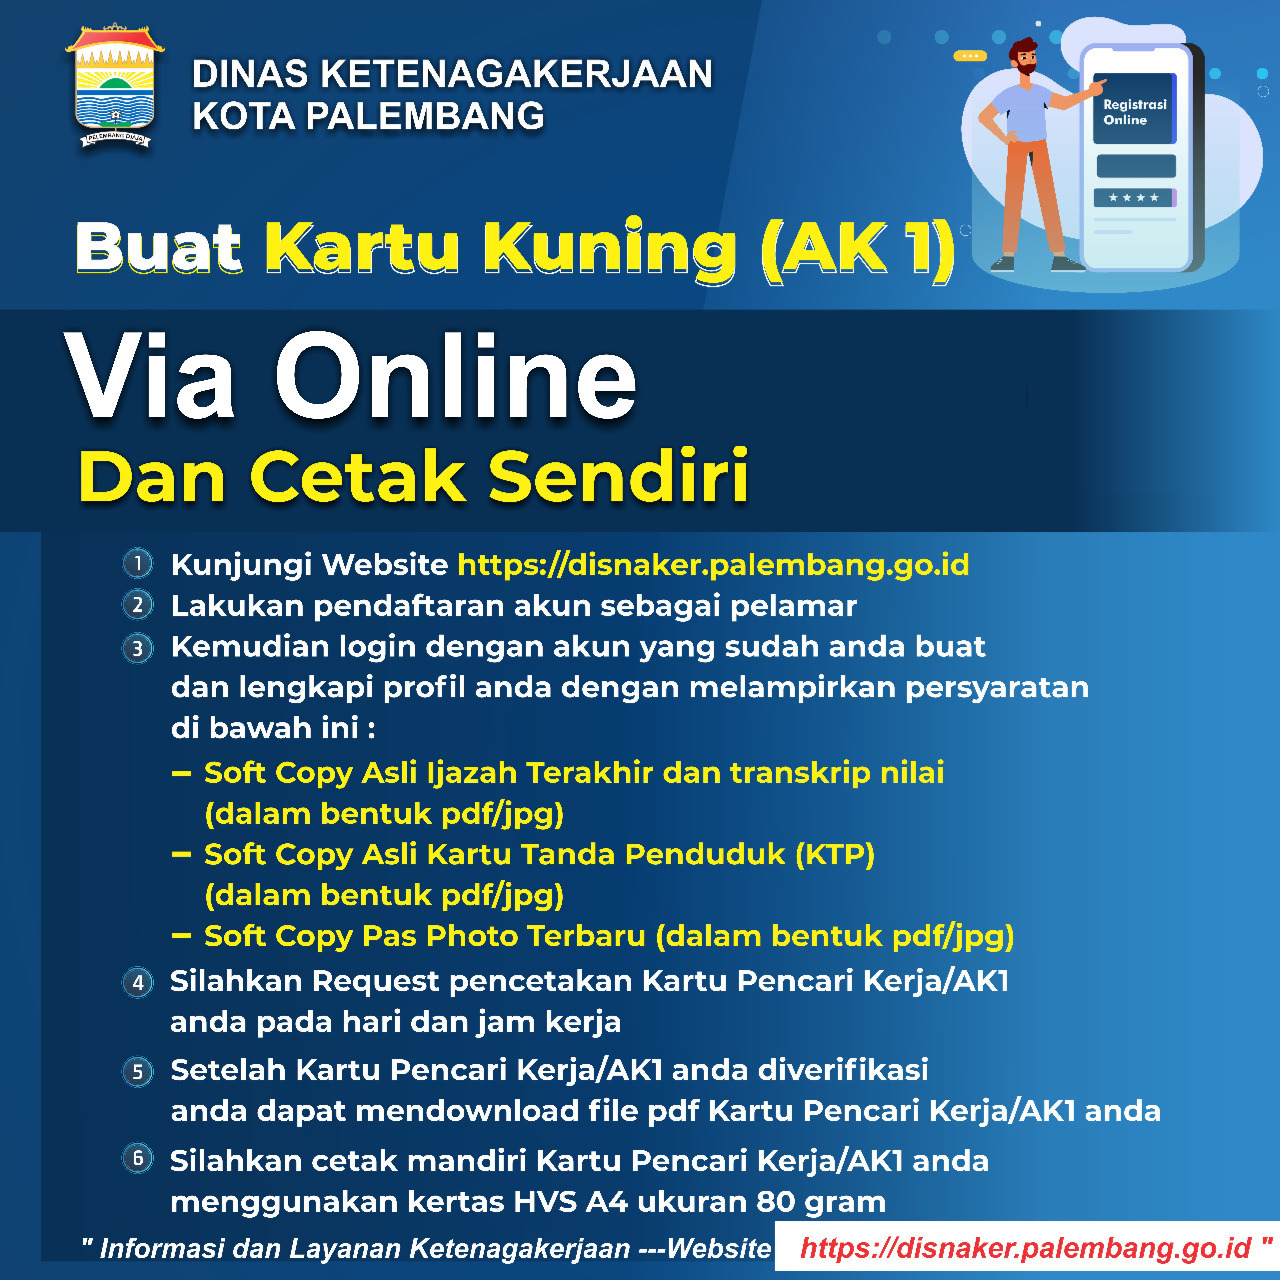 Keren daftar secara online, Kartu Kuning / AK 1 di Palembang bisa cetak